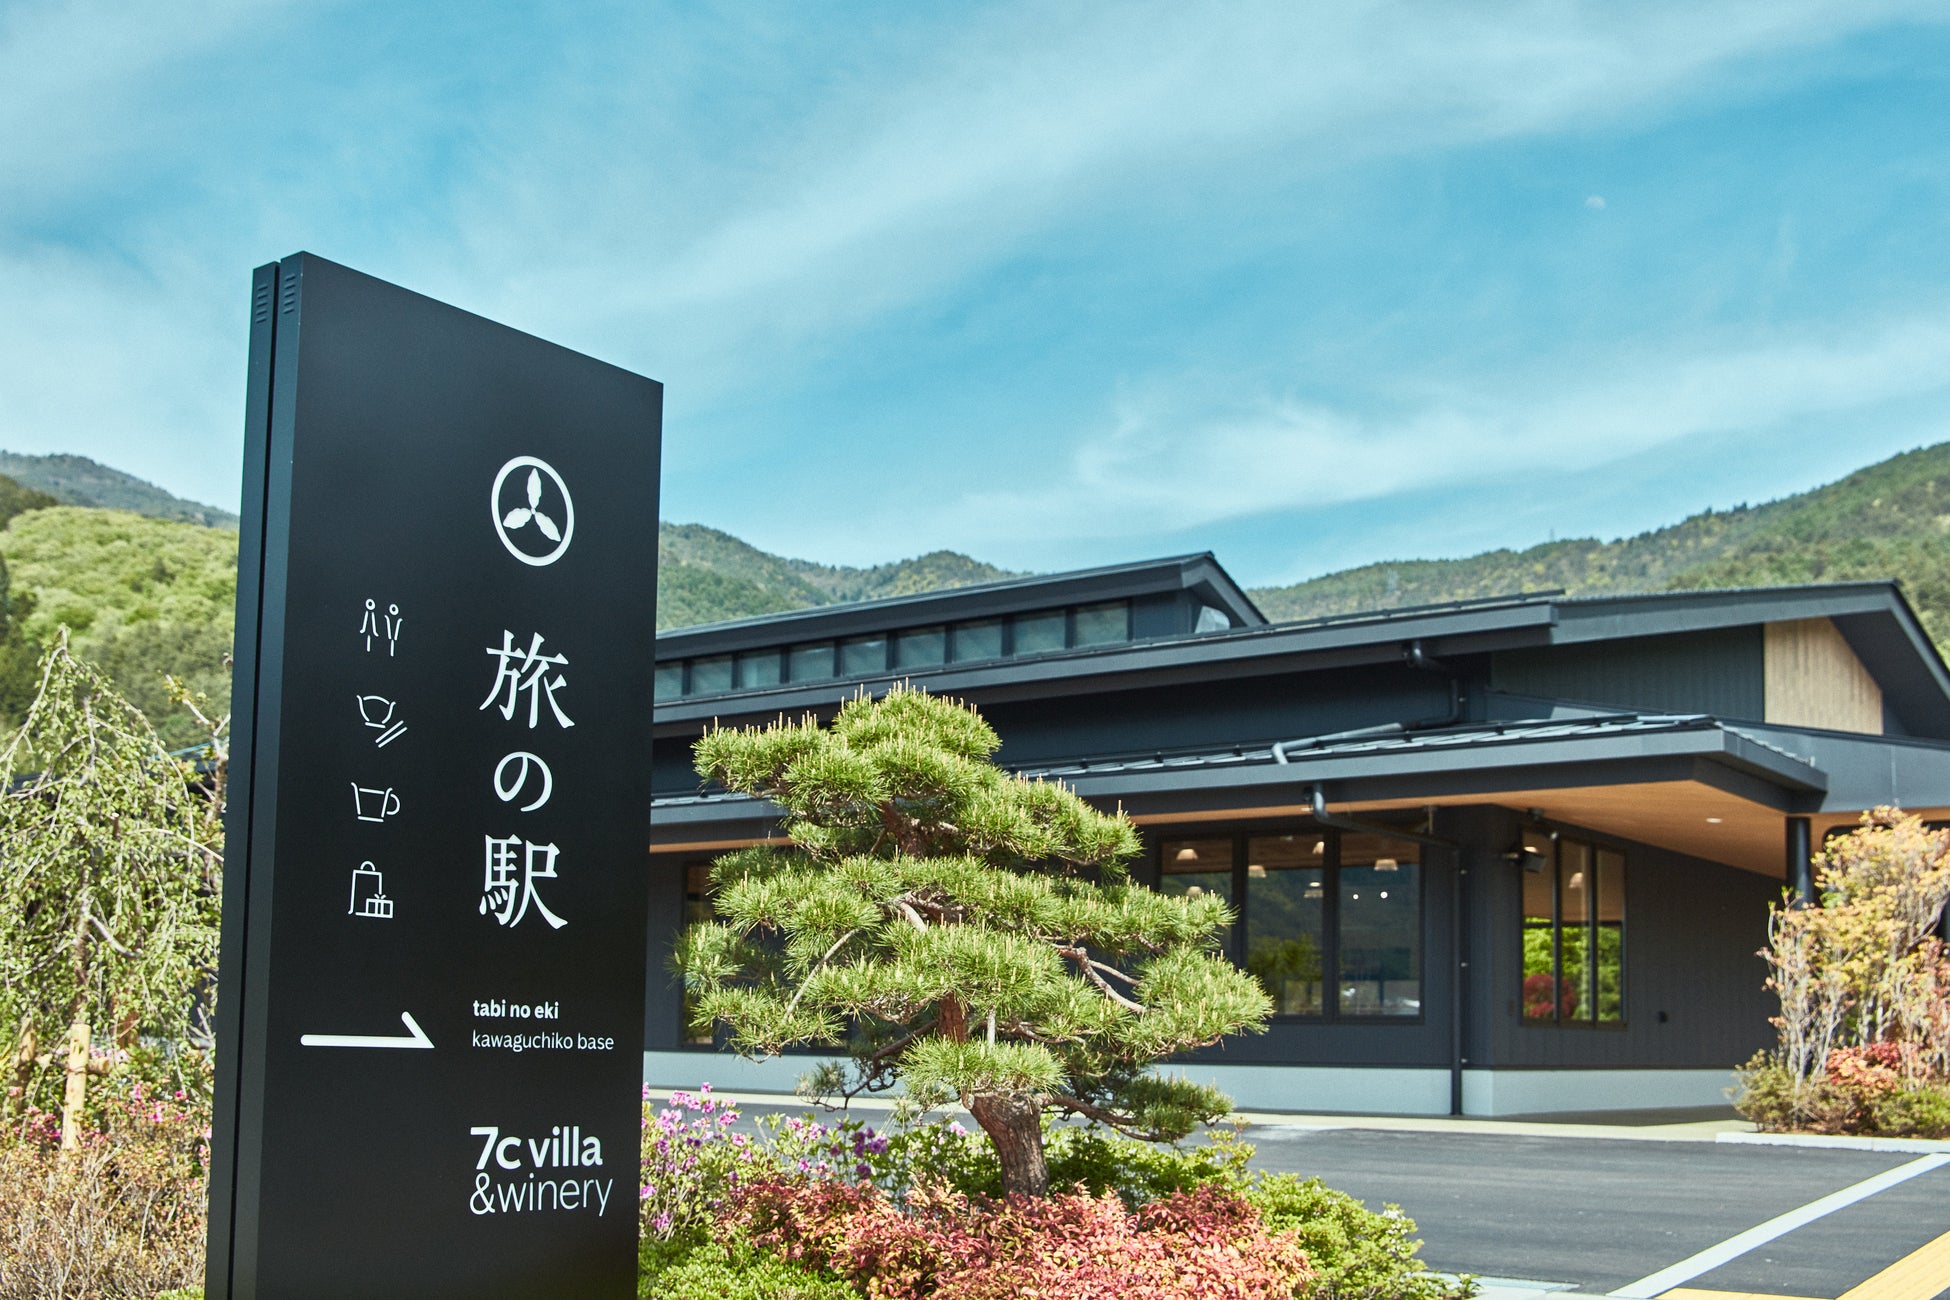 コロナ禍で大きな打撃を受けた富士河口湖エリアに、SDGsに配慮した新世代型”道の駅”「旅の駅 kawaguchiko base」が開業 。